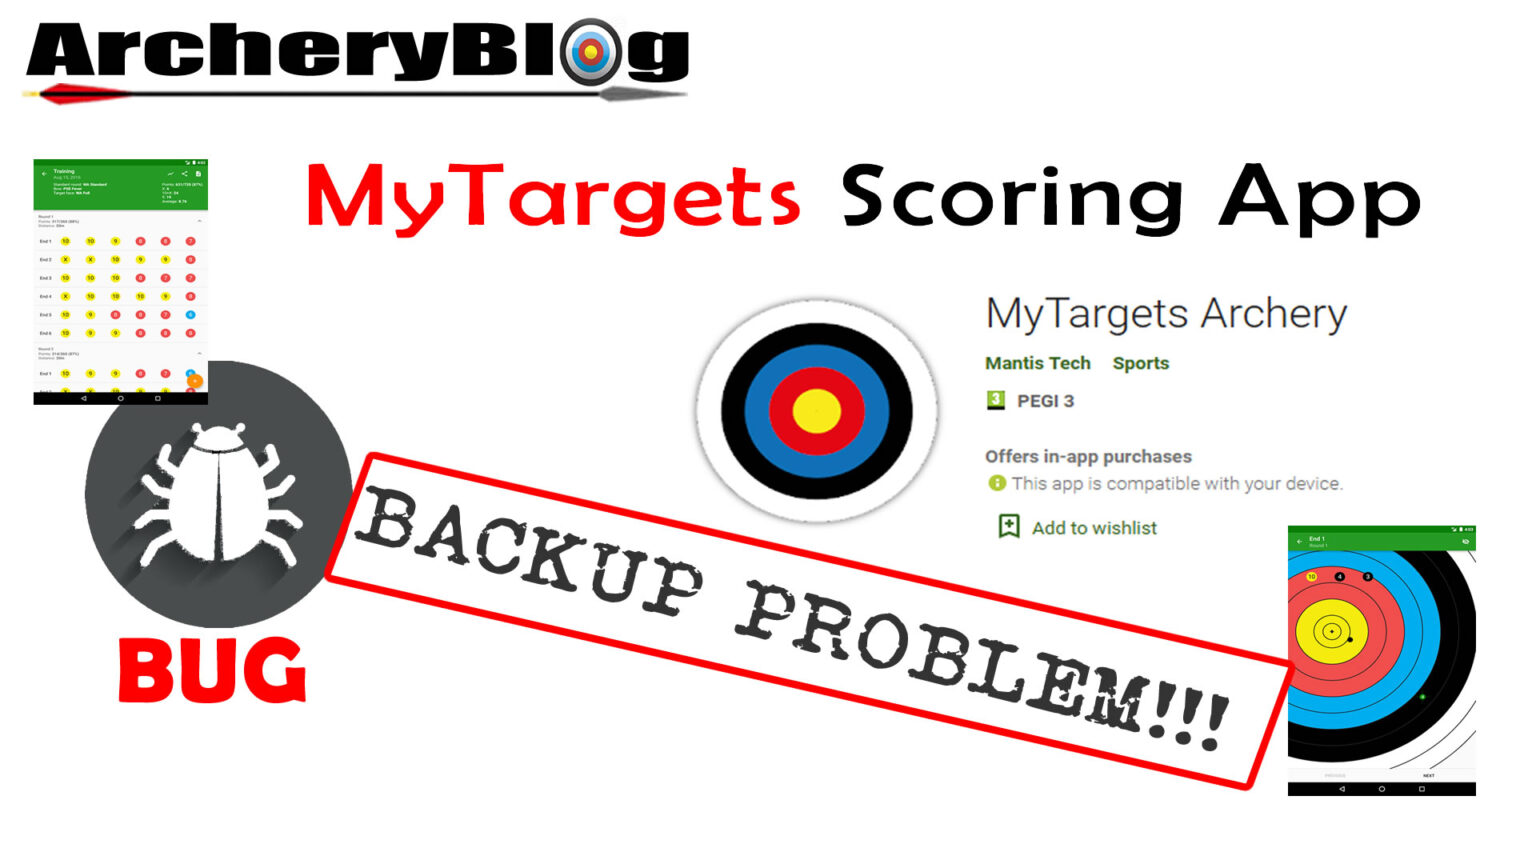 mytargets-archery-scoring-app-backup-problem-archery-blog-everything-archery-related